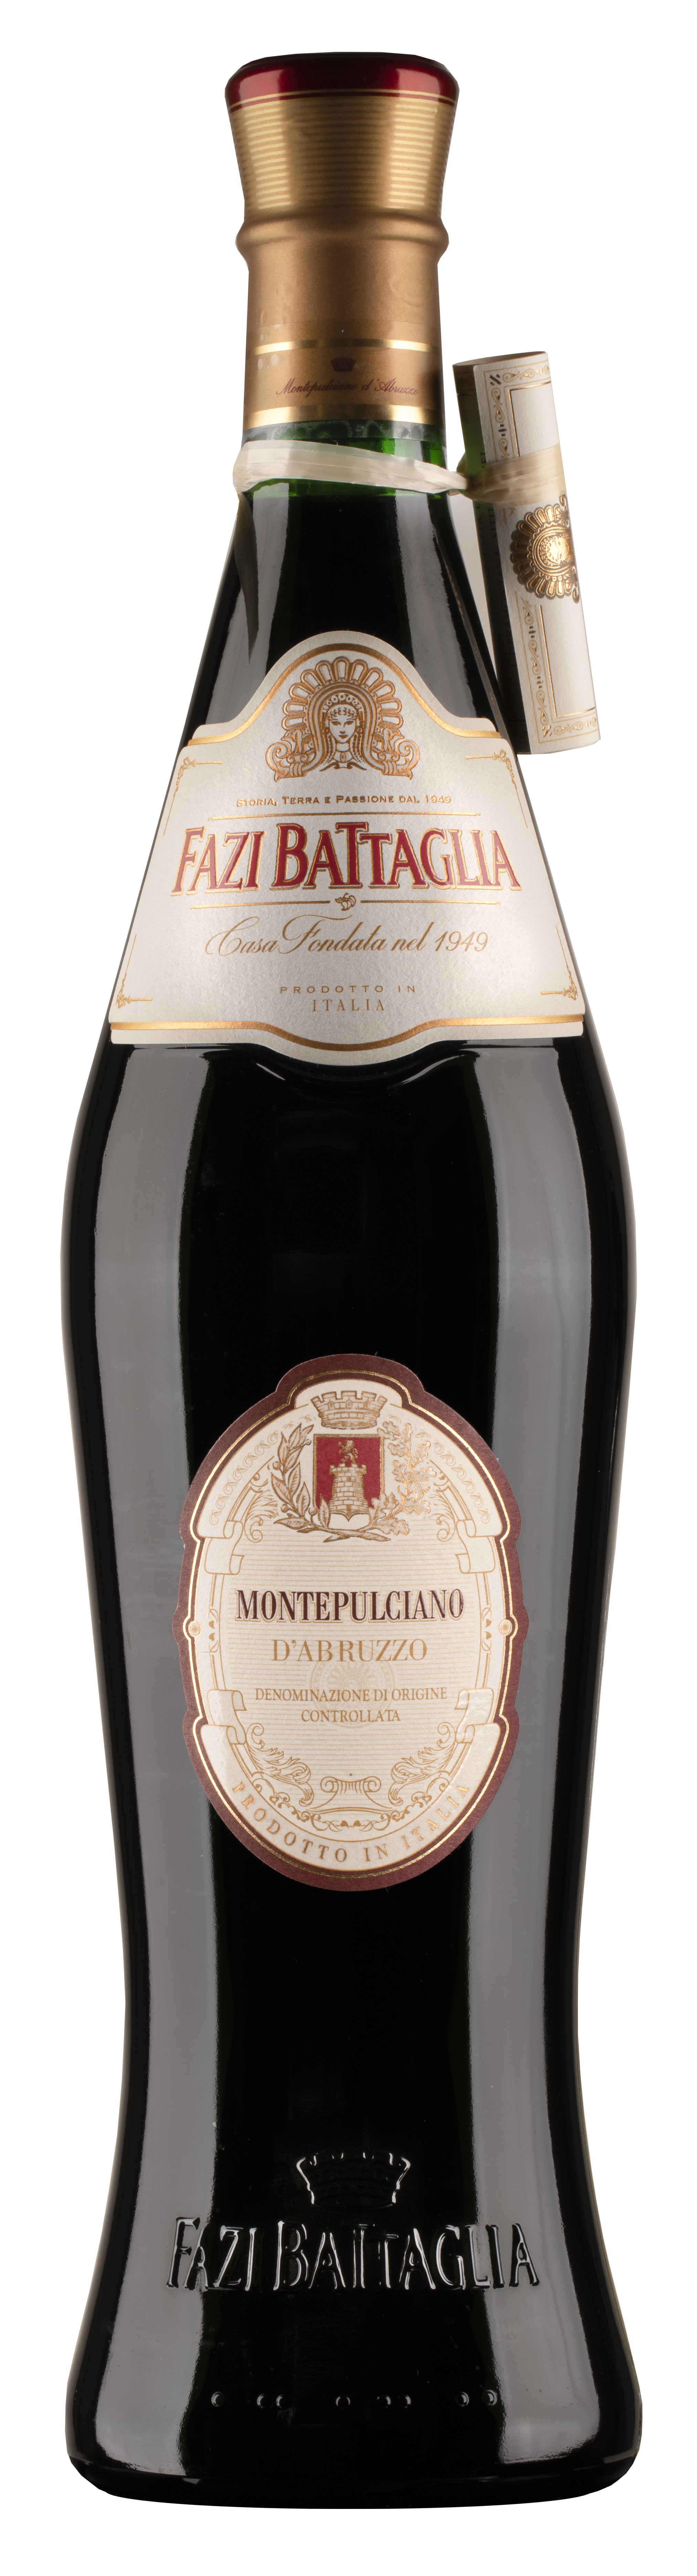 Montepulciano d' Abruzzo 14% 0,75l - 2019 | Fazi Battaglia | Vino Italia